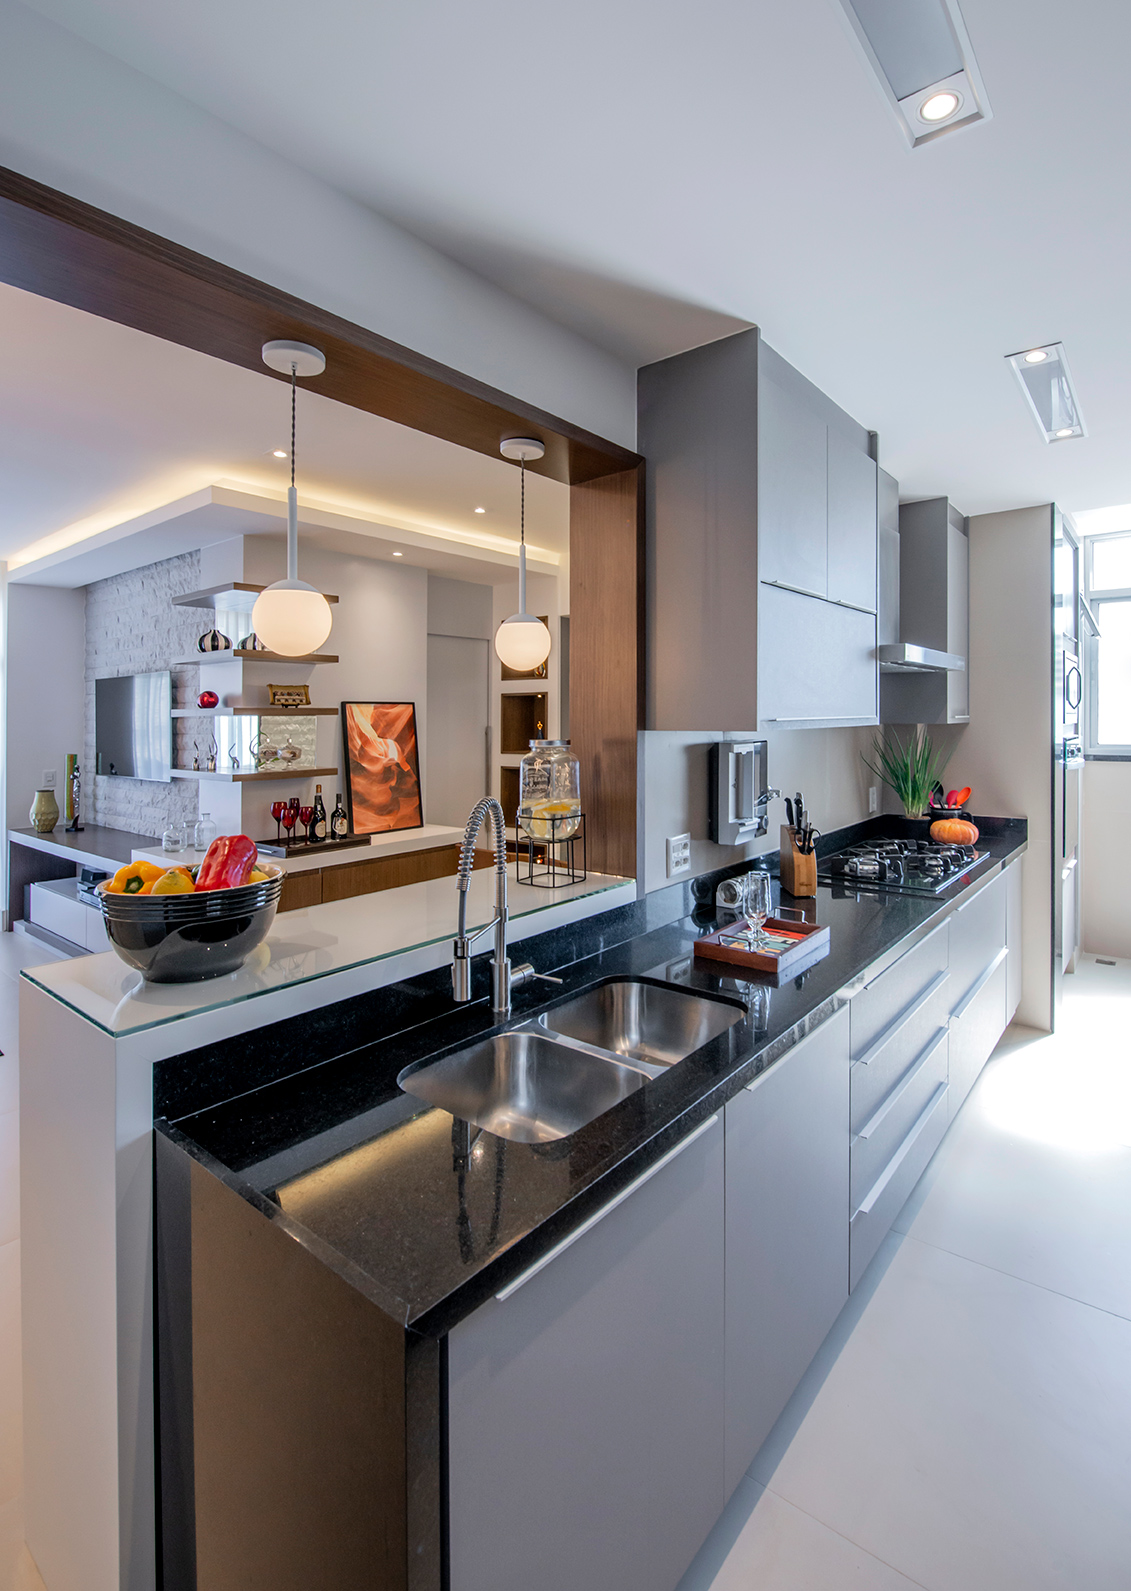 Apê de 90 m² ganha layout funcional após troca de paredes de lugar. Projeto de Campos & Olivetti Arquitetura. Na foto, cozinha corredor integrada com a sala.